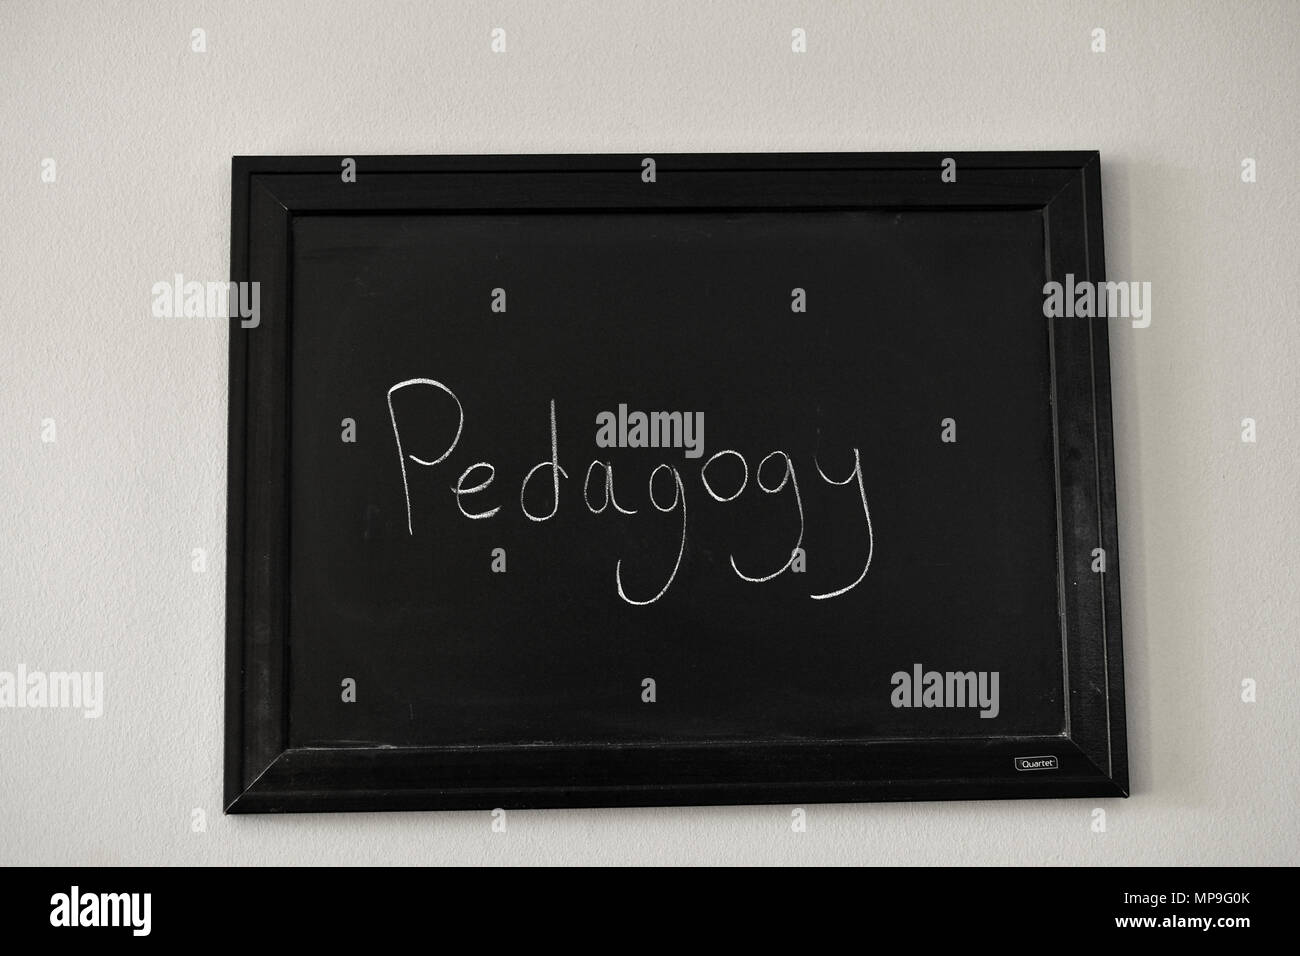 Pedagogy written in white chalk on a wall mounted blackboard. Stock Photo